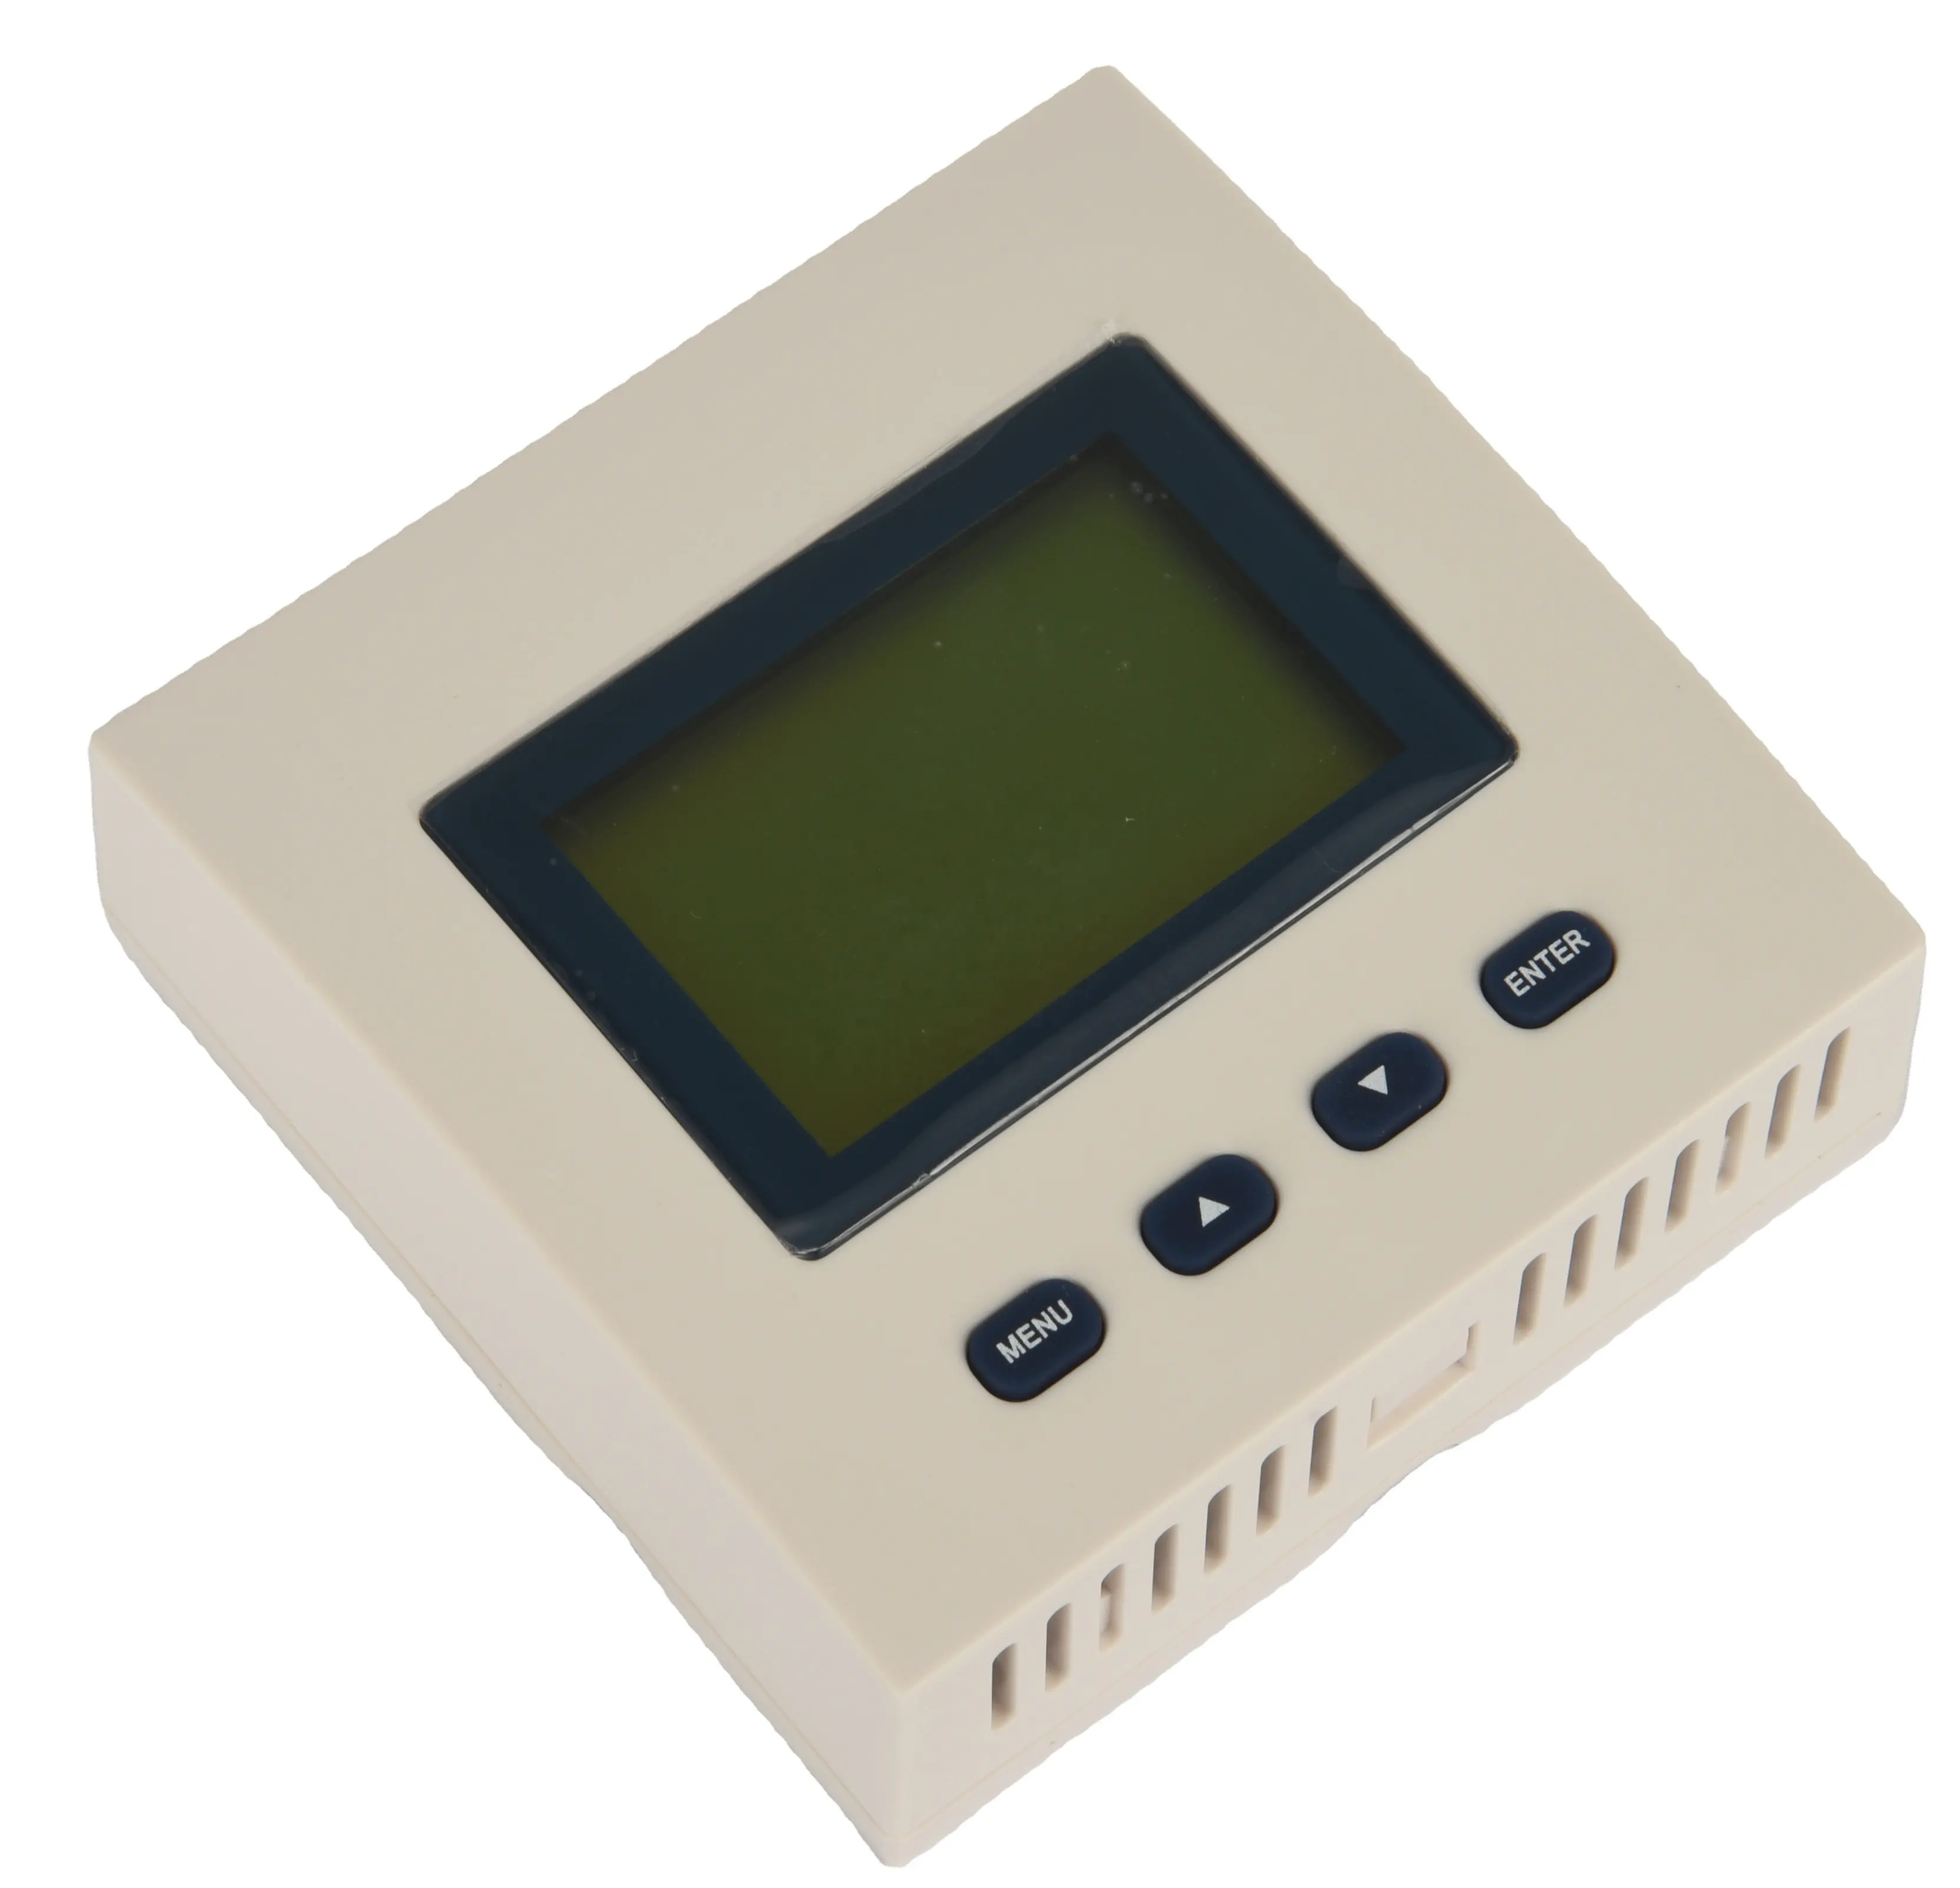 Новейший выход RS-485, с ЖК-дисплеем, отображением данных, позволяет контролировать программное обеспечение и управлять датчиком влажности и температуры